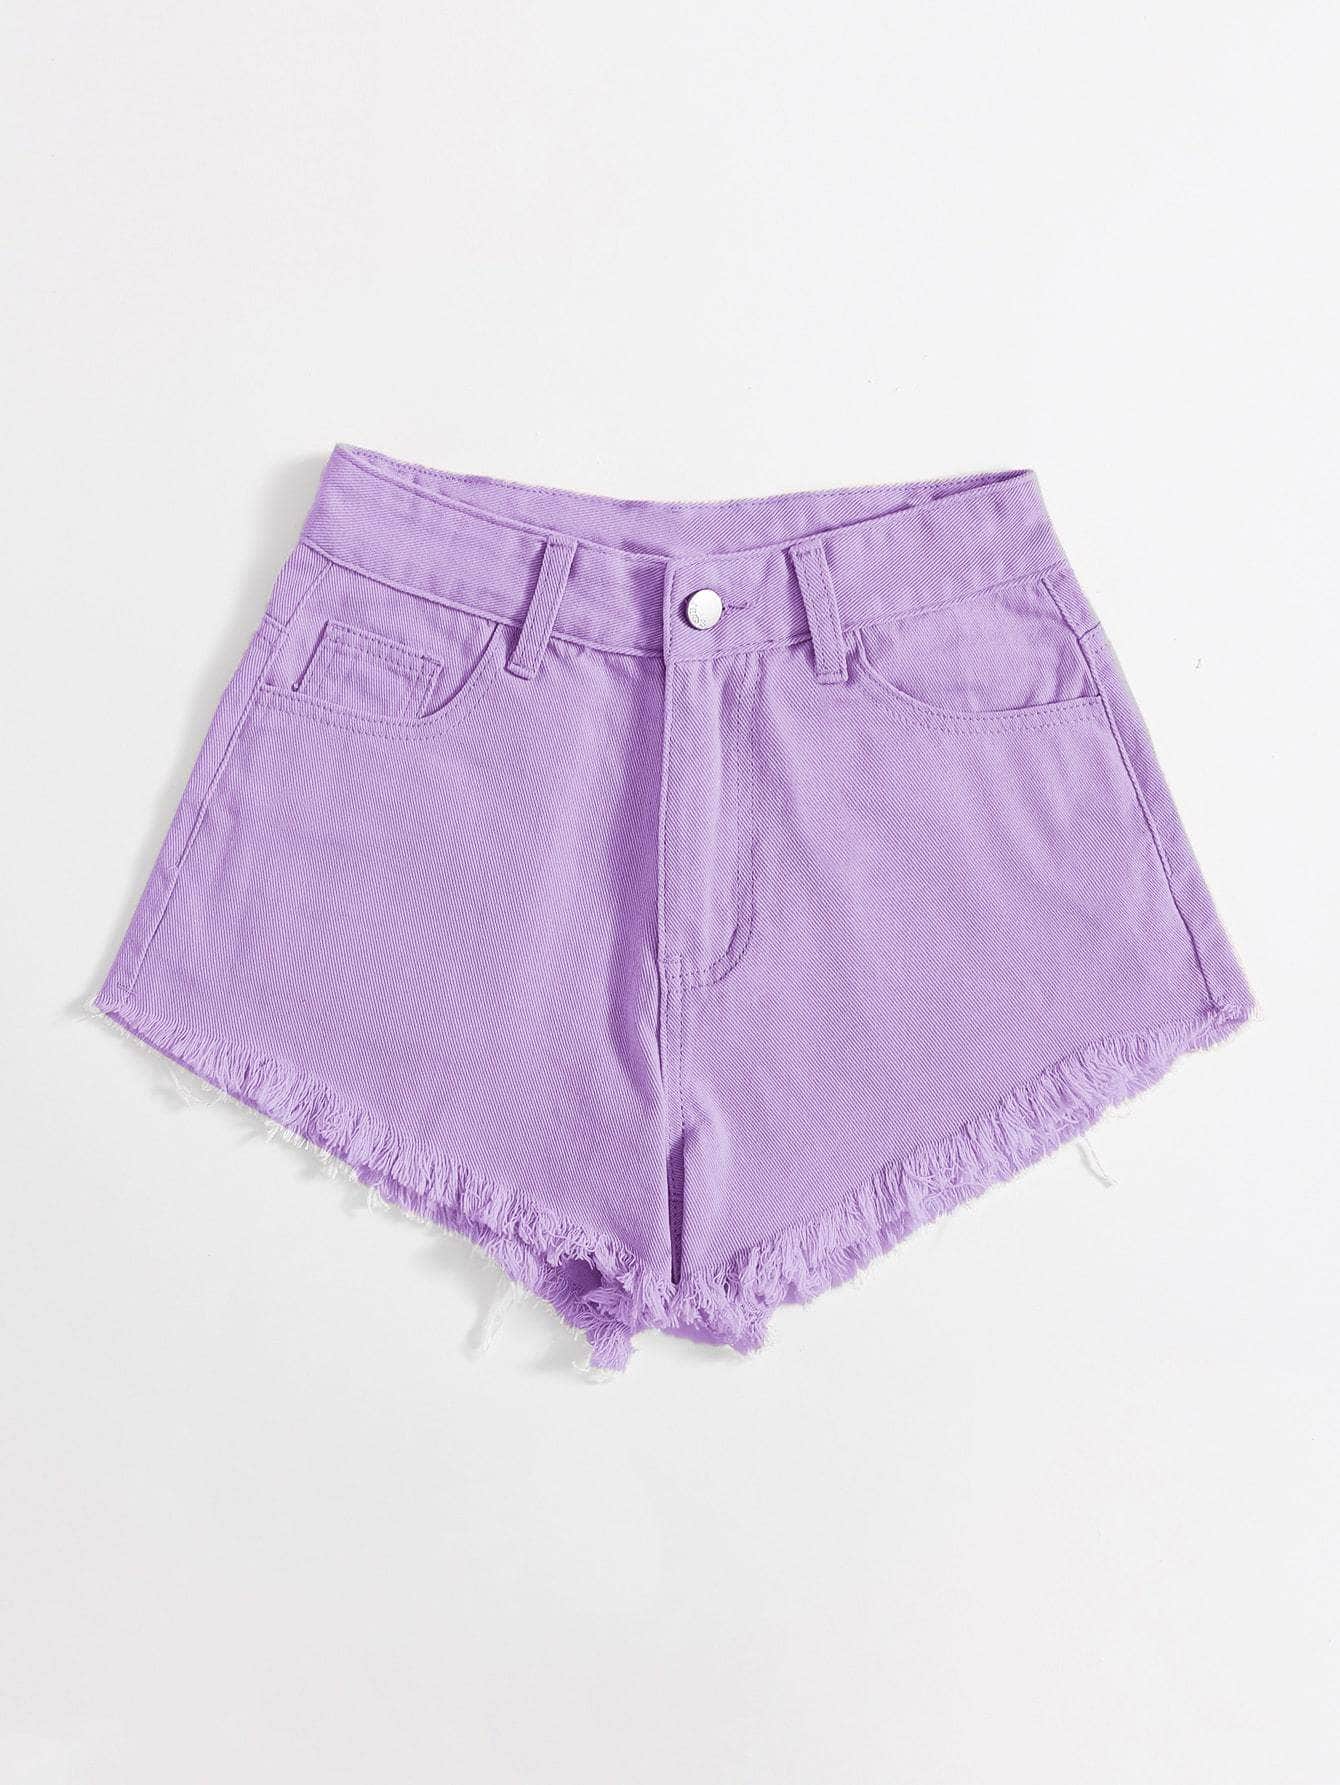 Lila Purpura / M Shorts jean con bordado bajo crudo